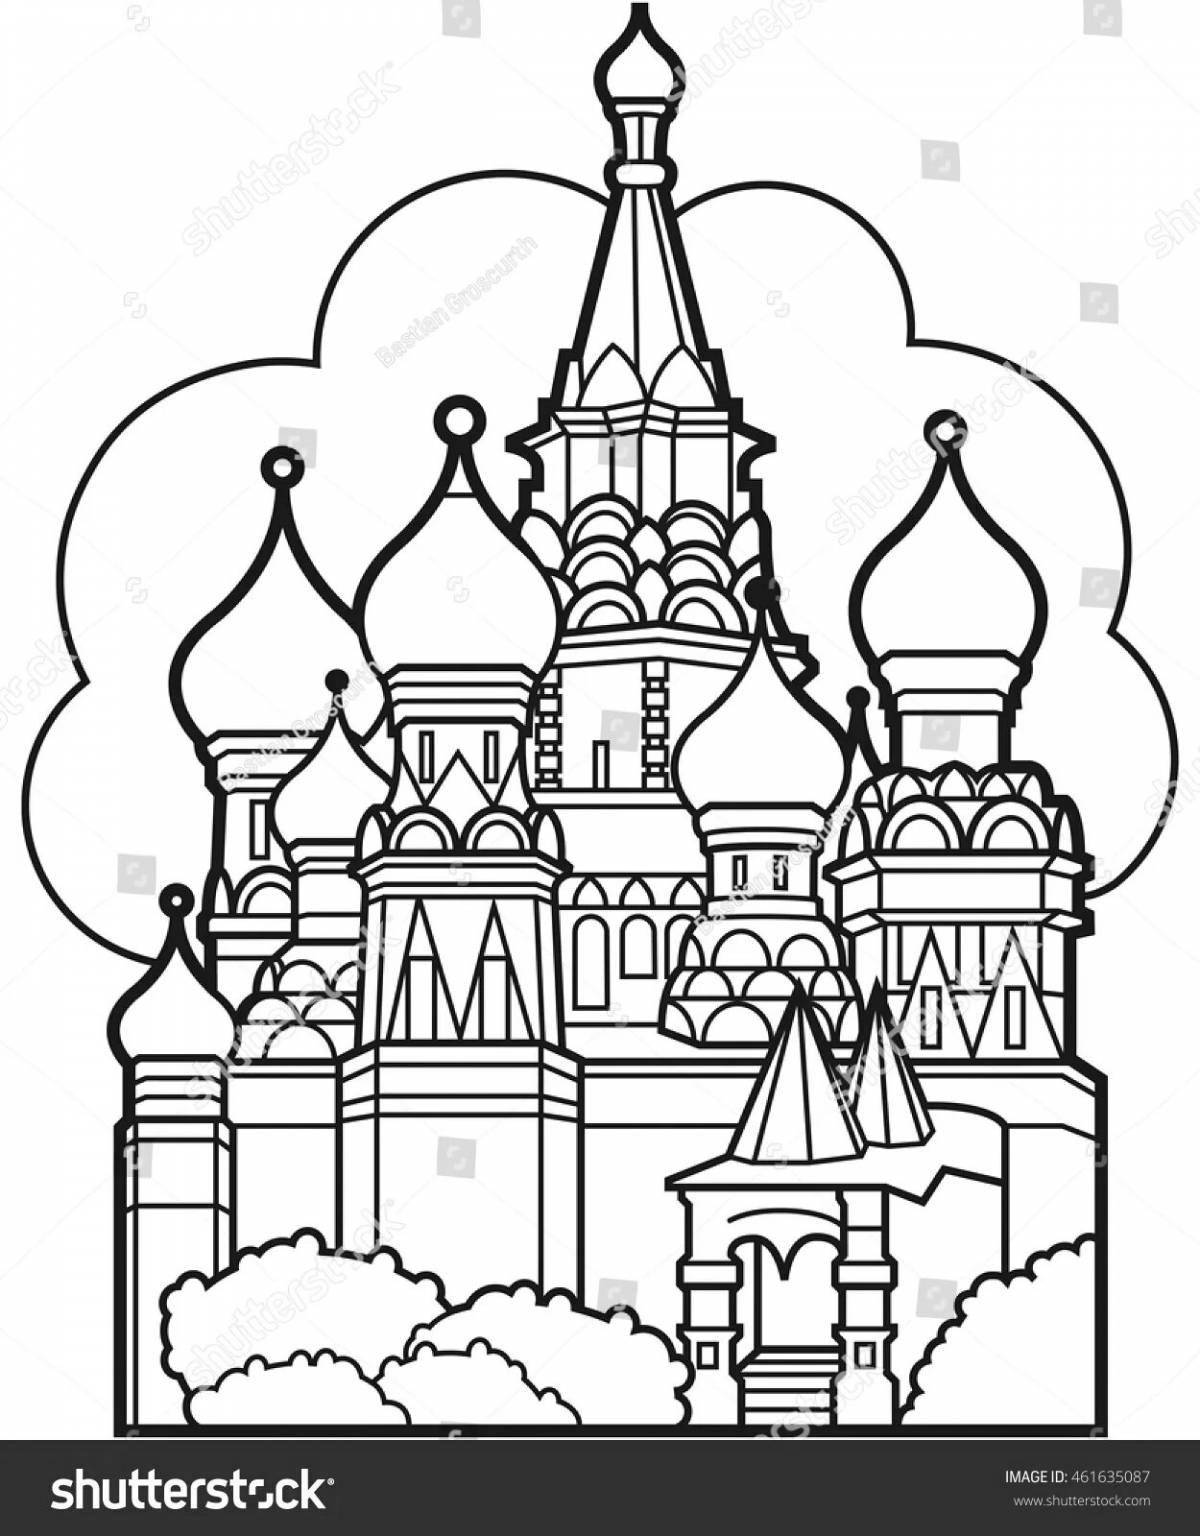 Outstanding Kremlin coloring book for preschoolers